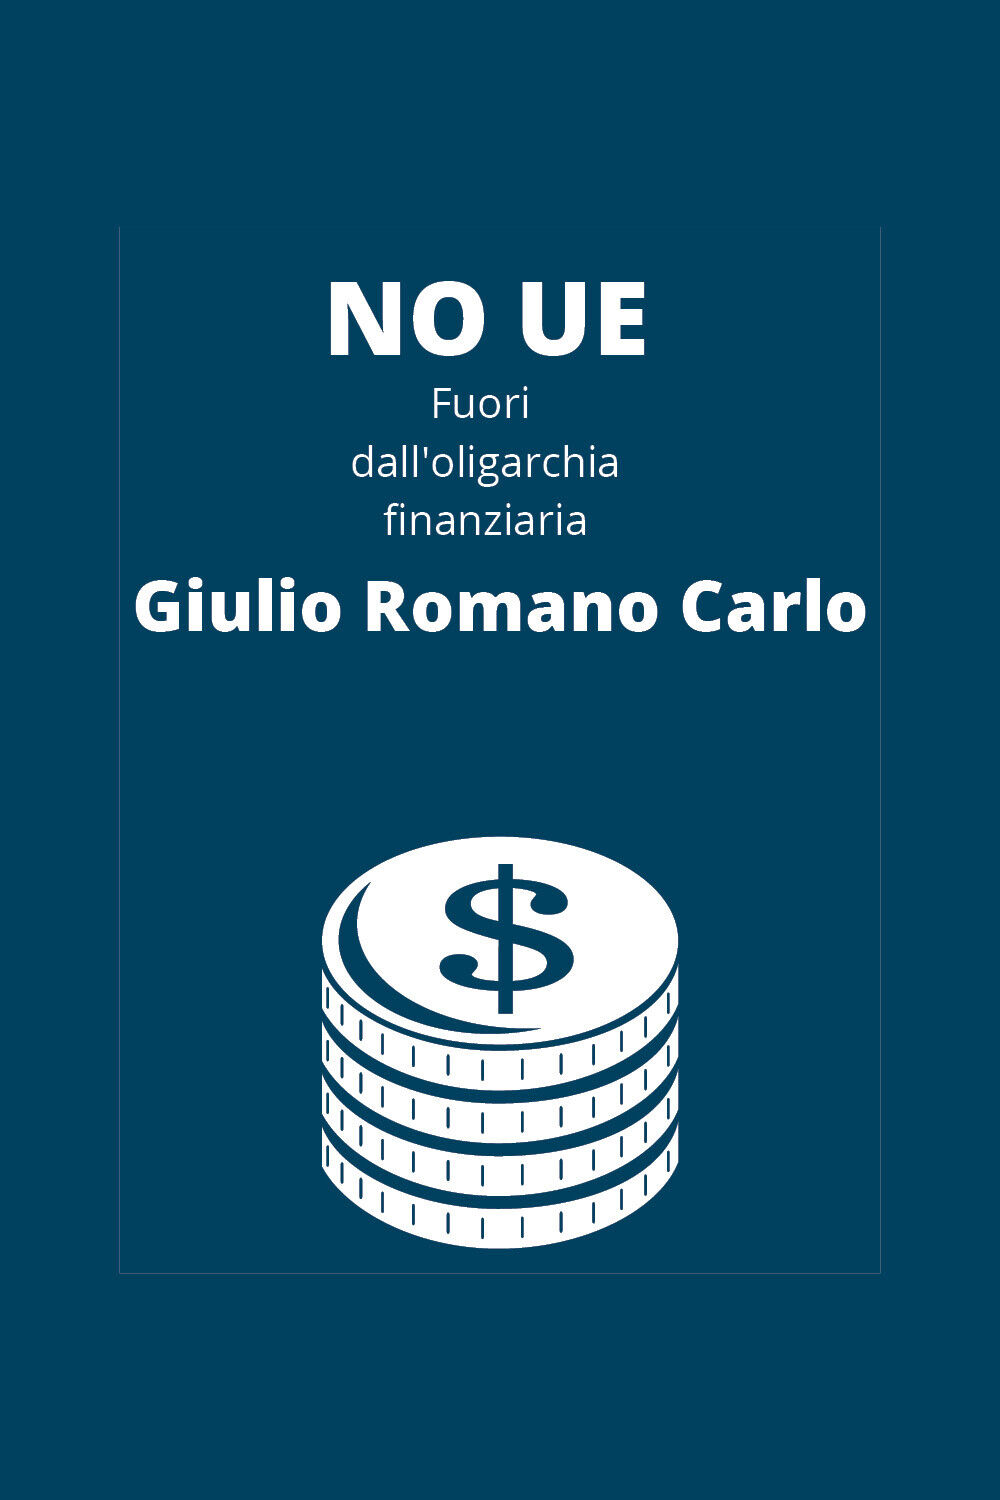 No UE, fuori dalL'oligarchia finanziaria di Giulio Romano Carlo,  2020,  Youcanp